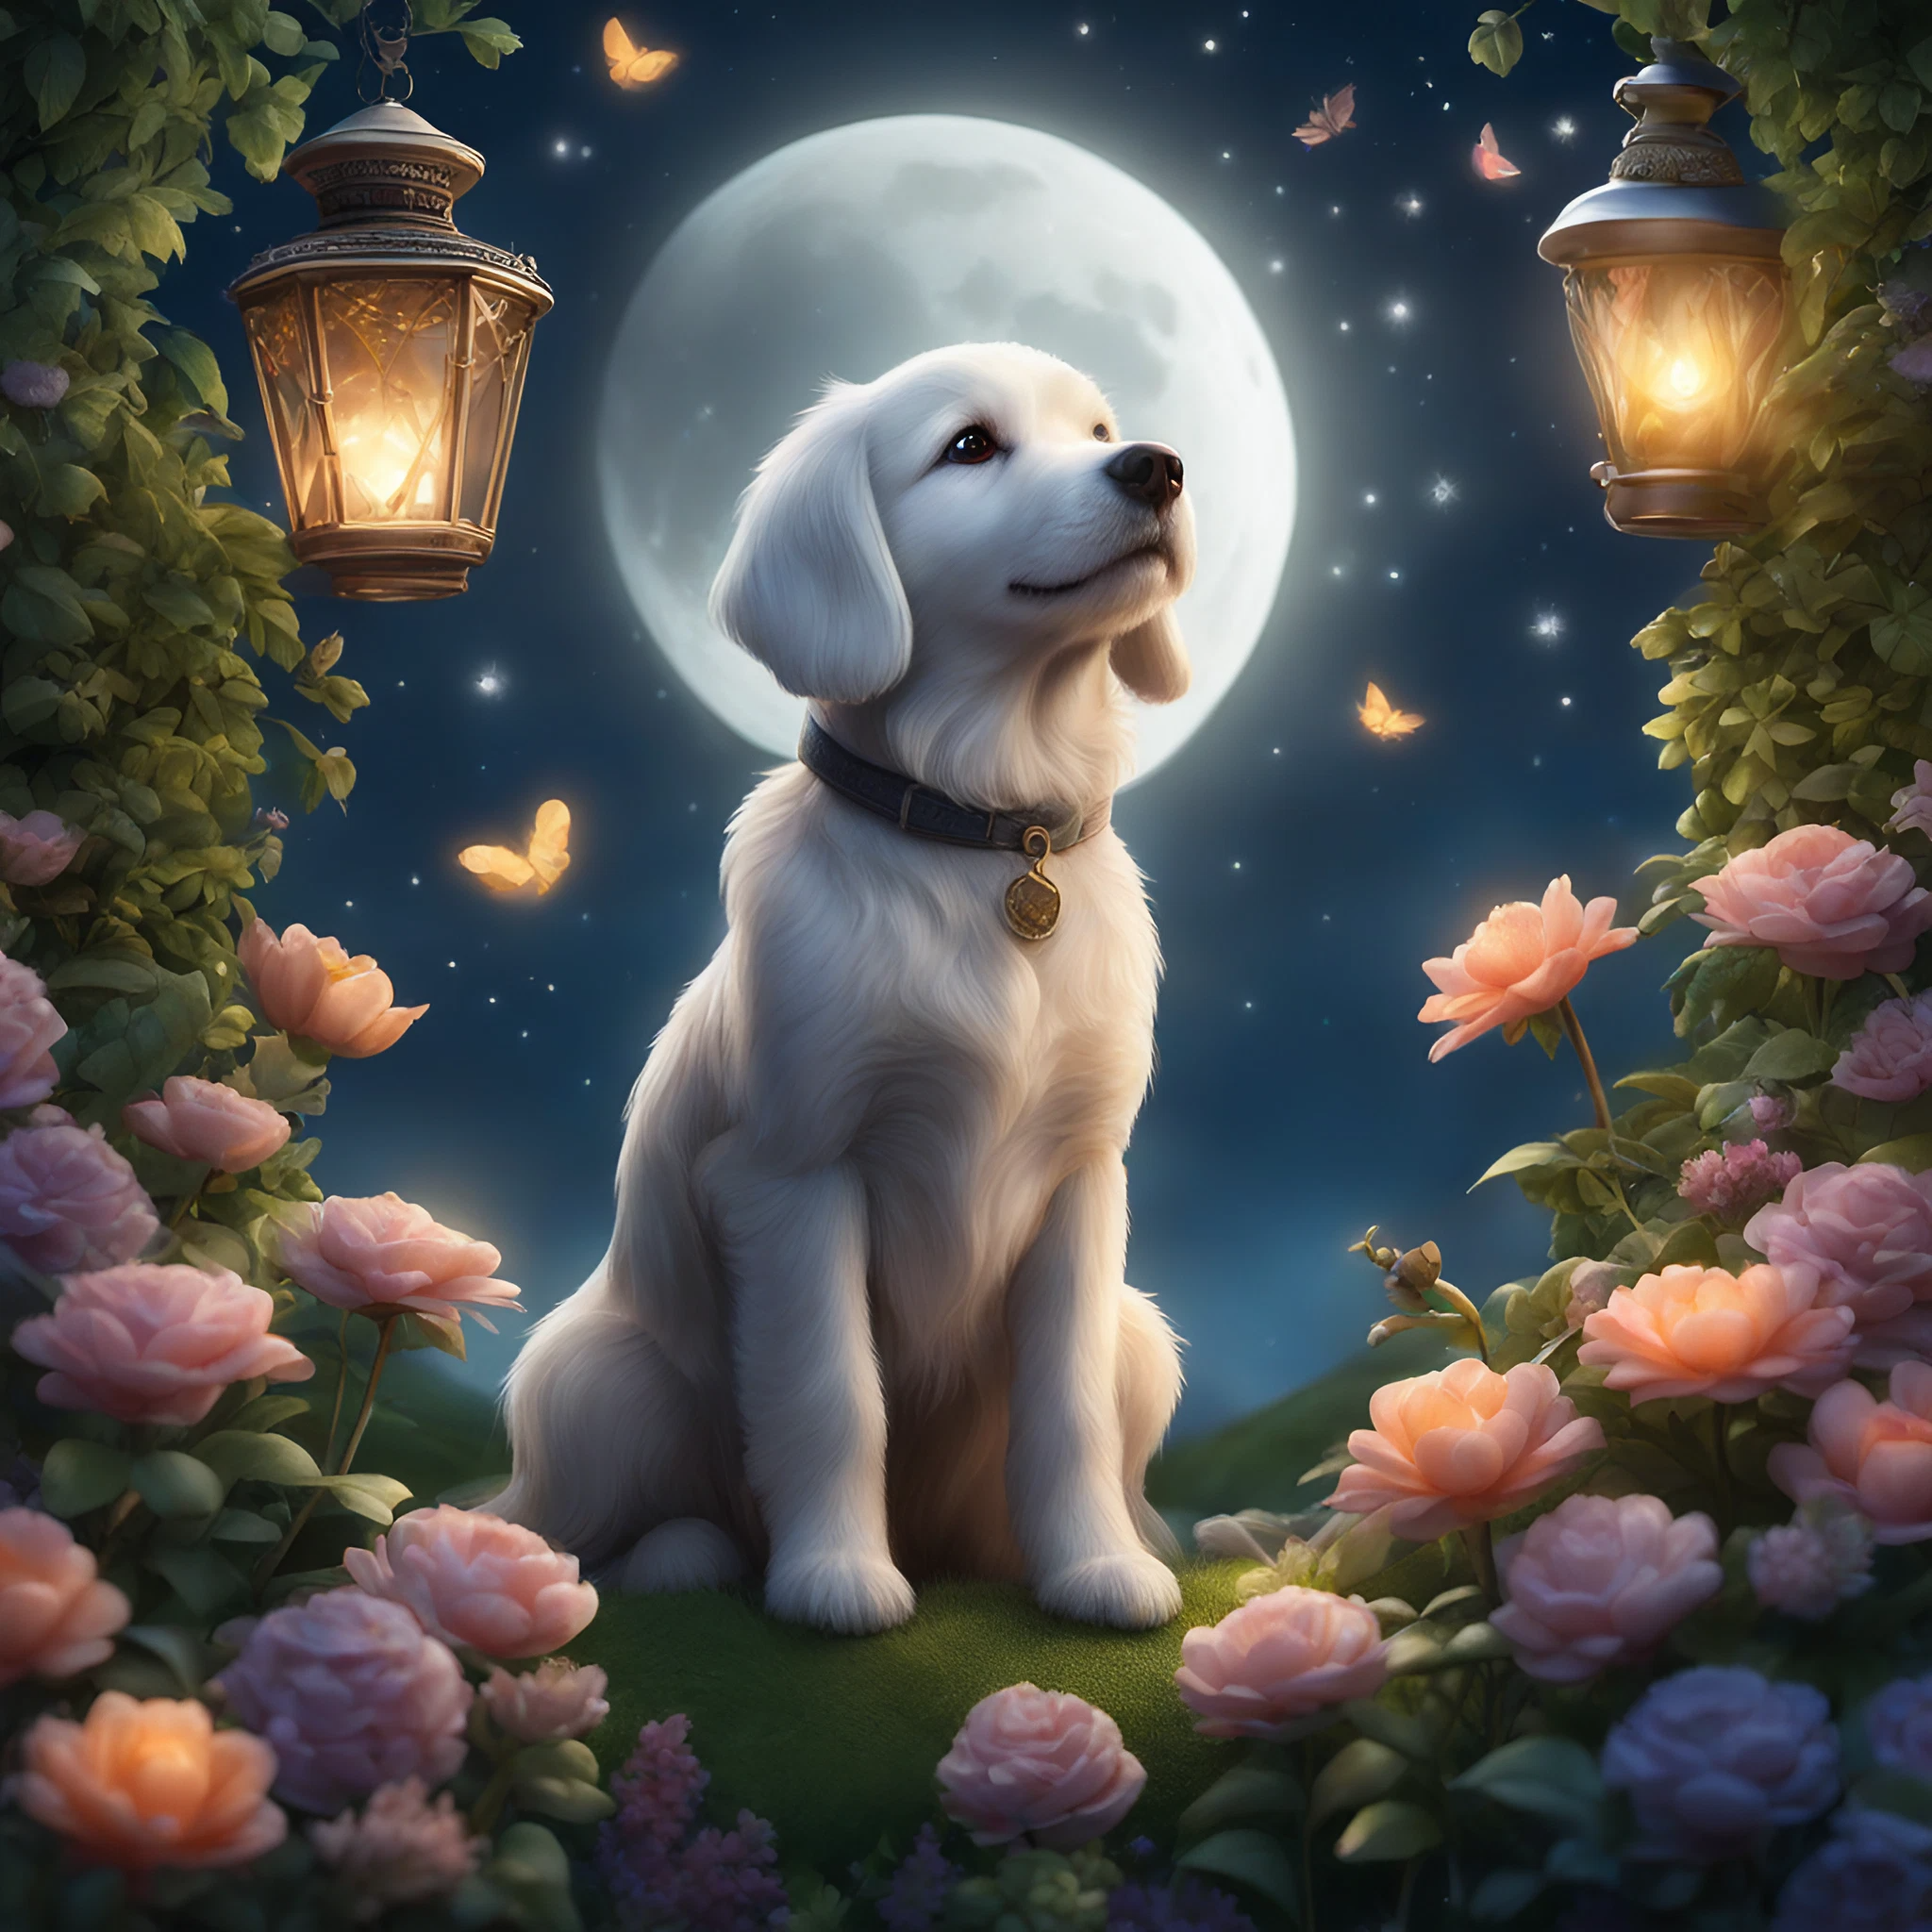 夜空を眺める白い子犬＆美しい月と幻想的な花園とランプの無料画像素材